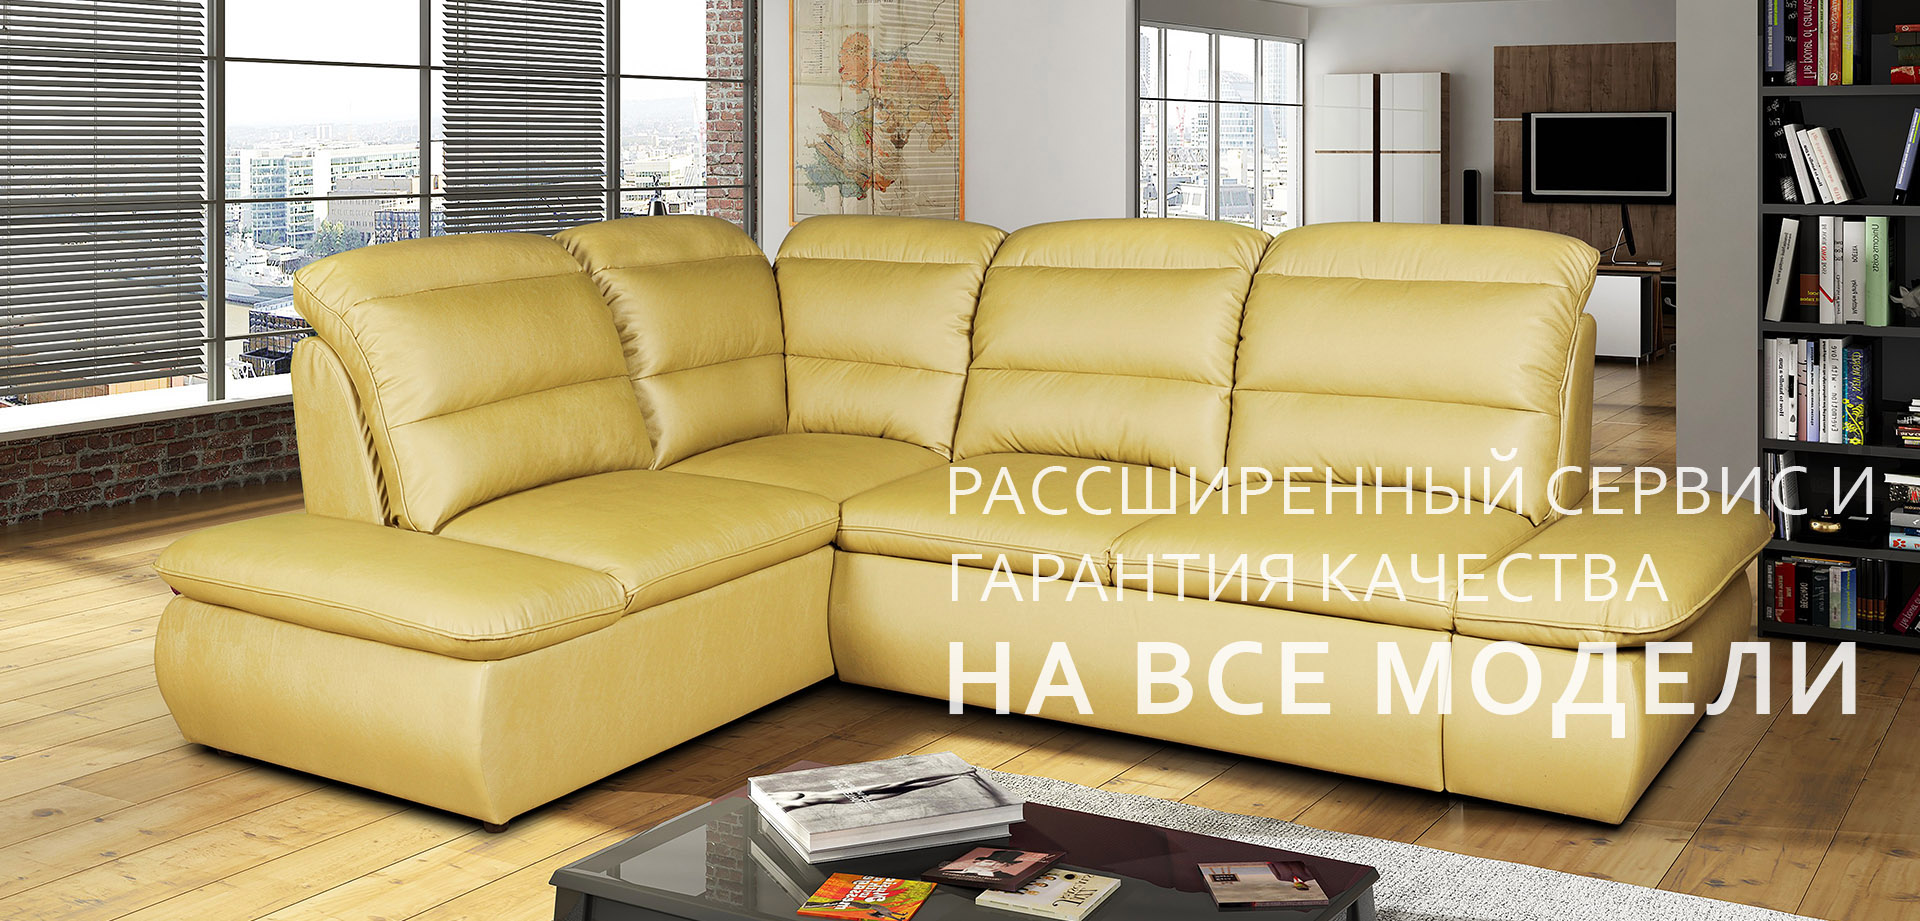 Ульяновская мебельная фабрика лидер